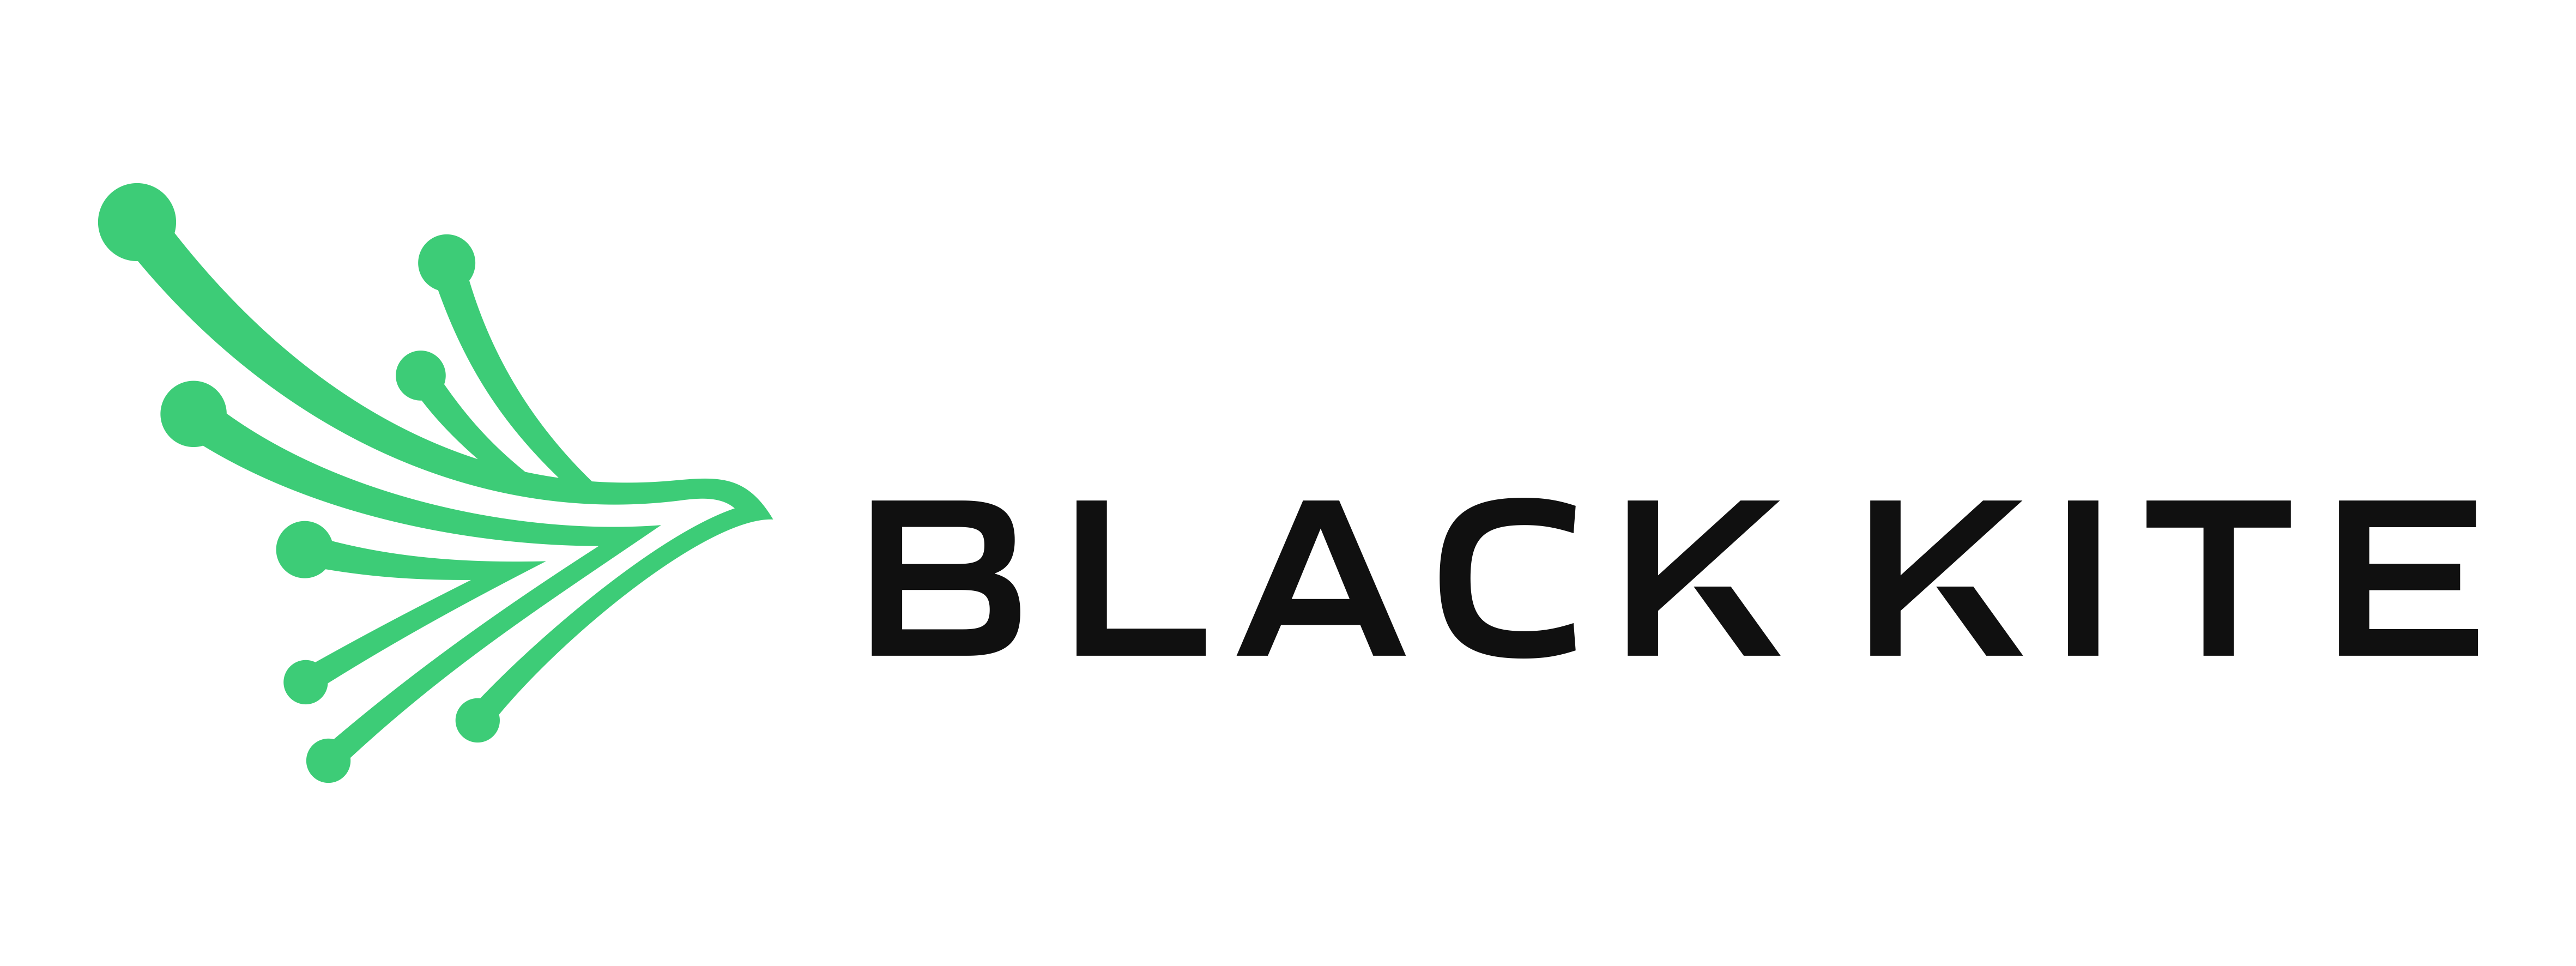 Press Kit - Black Kite